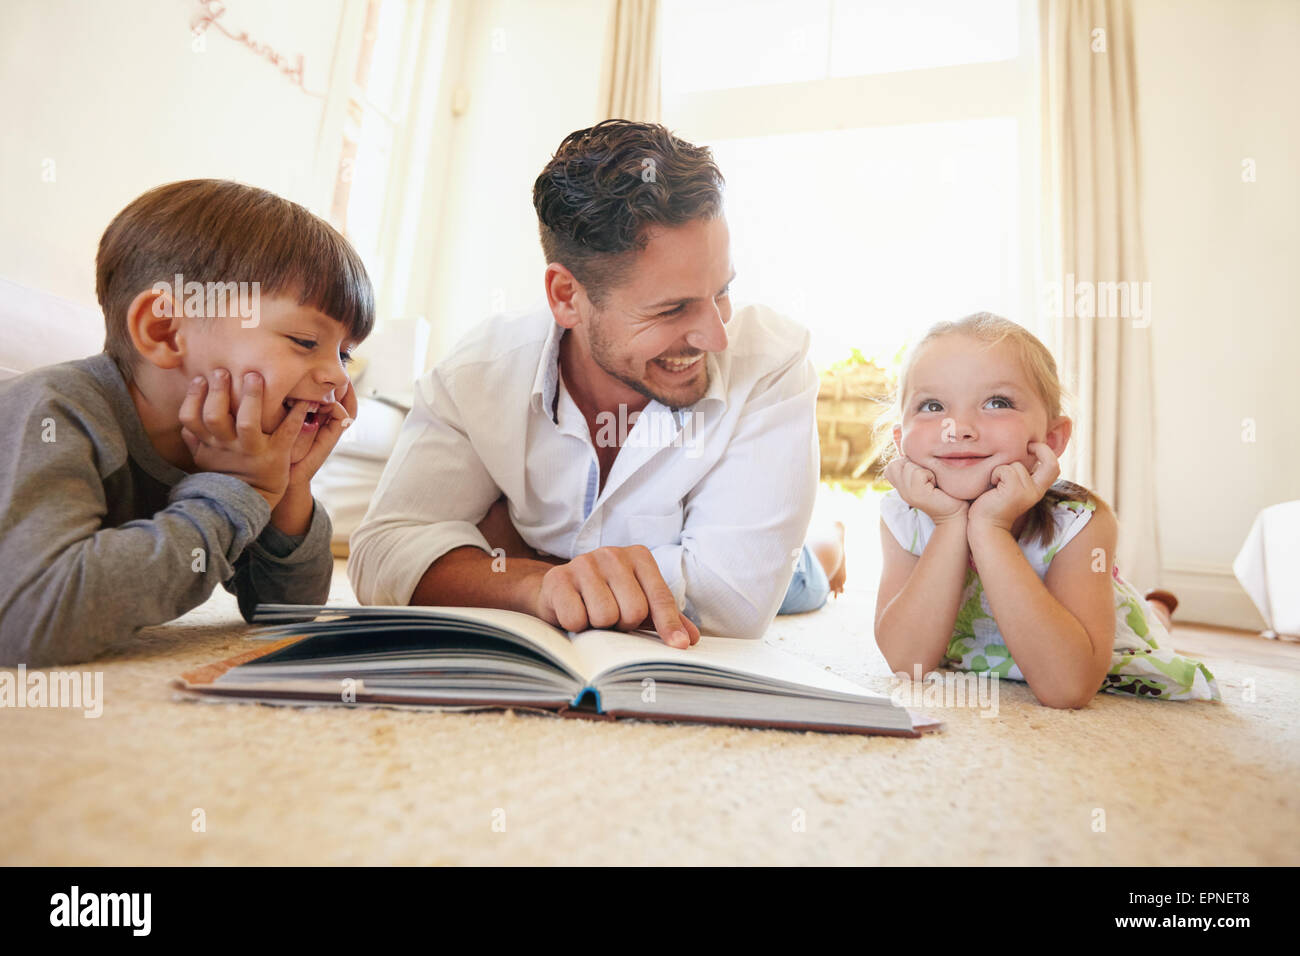 Porträt der glückliche junge Familie von drei mit einem Buch am Boden liegend. Vater mit zwei Kindern im Wohnzimmer bei einem Märchenbuch lesen Stockfoto